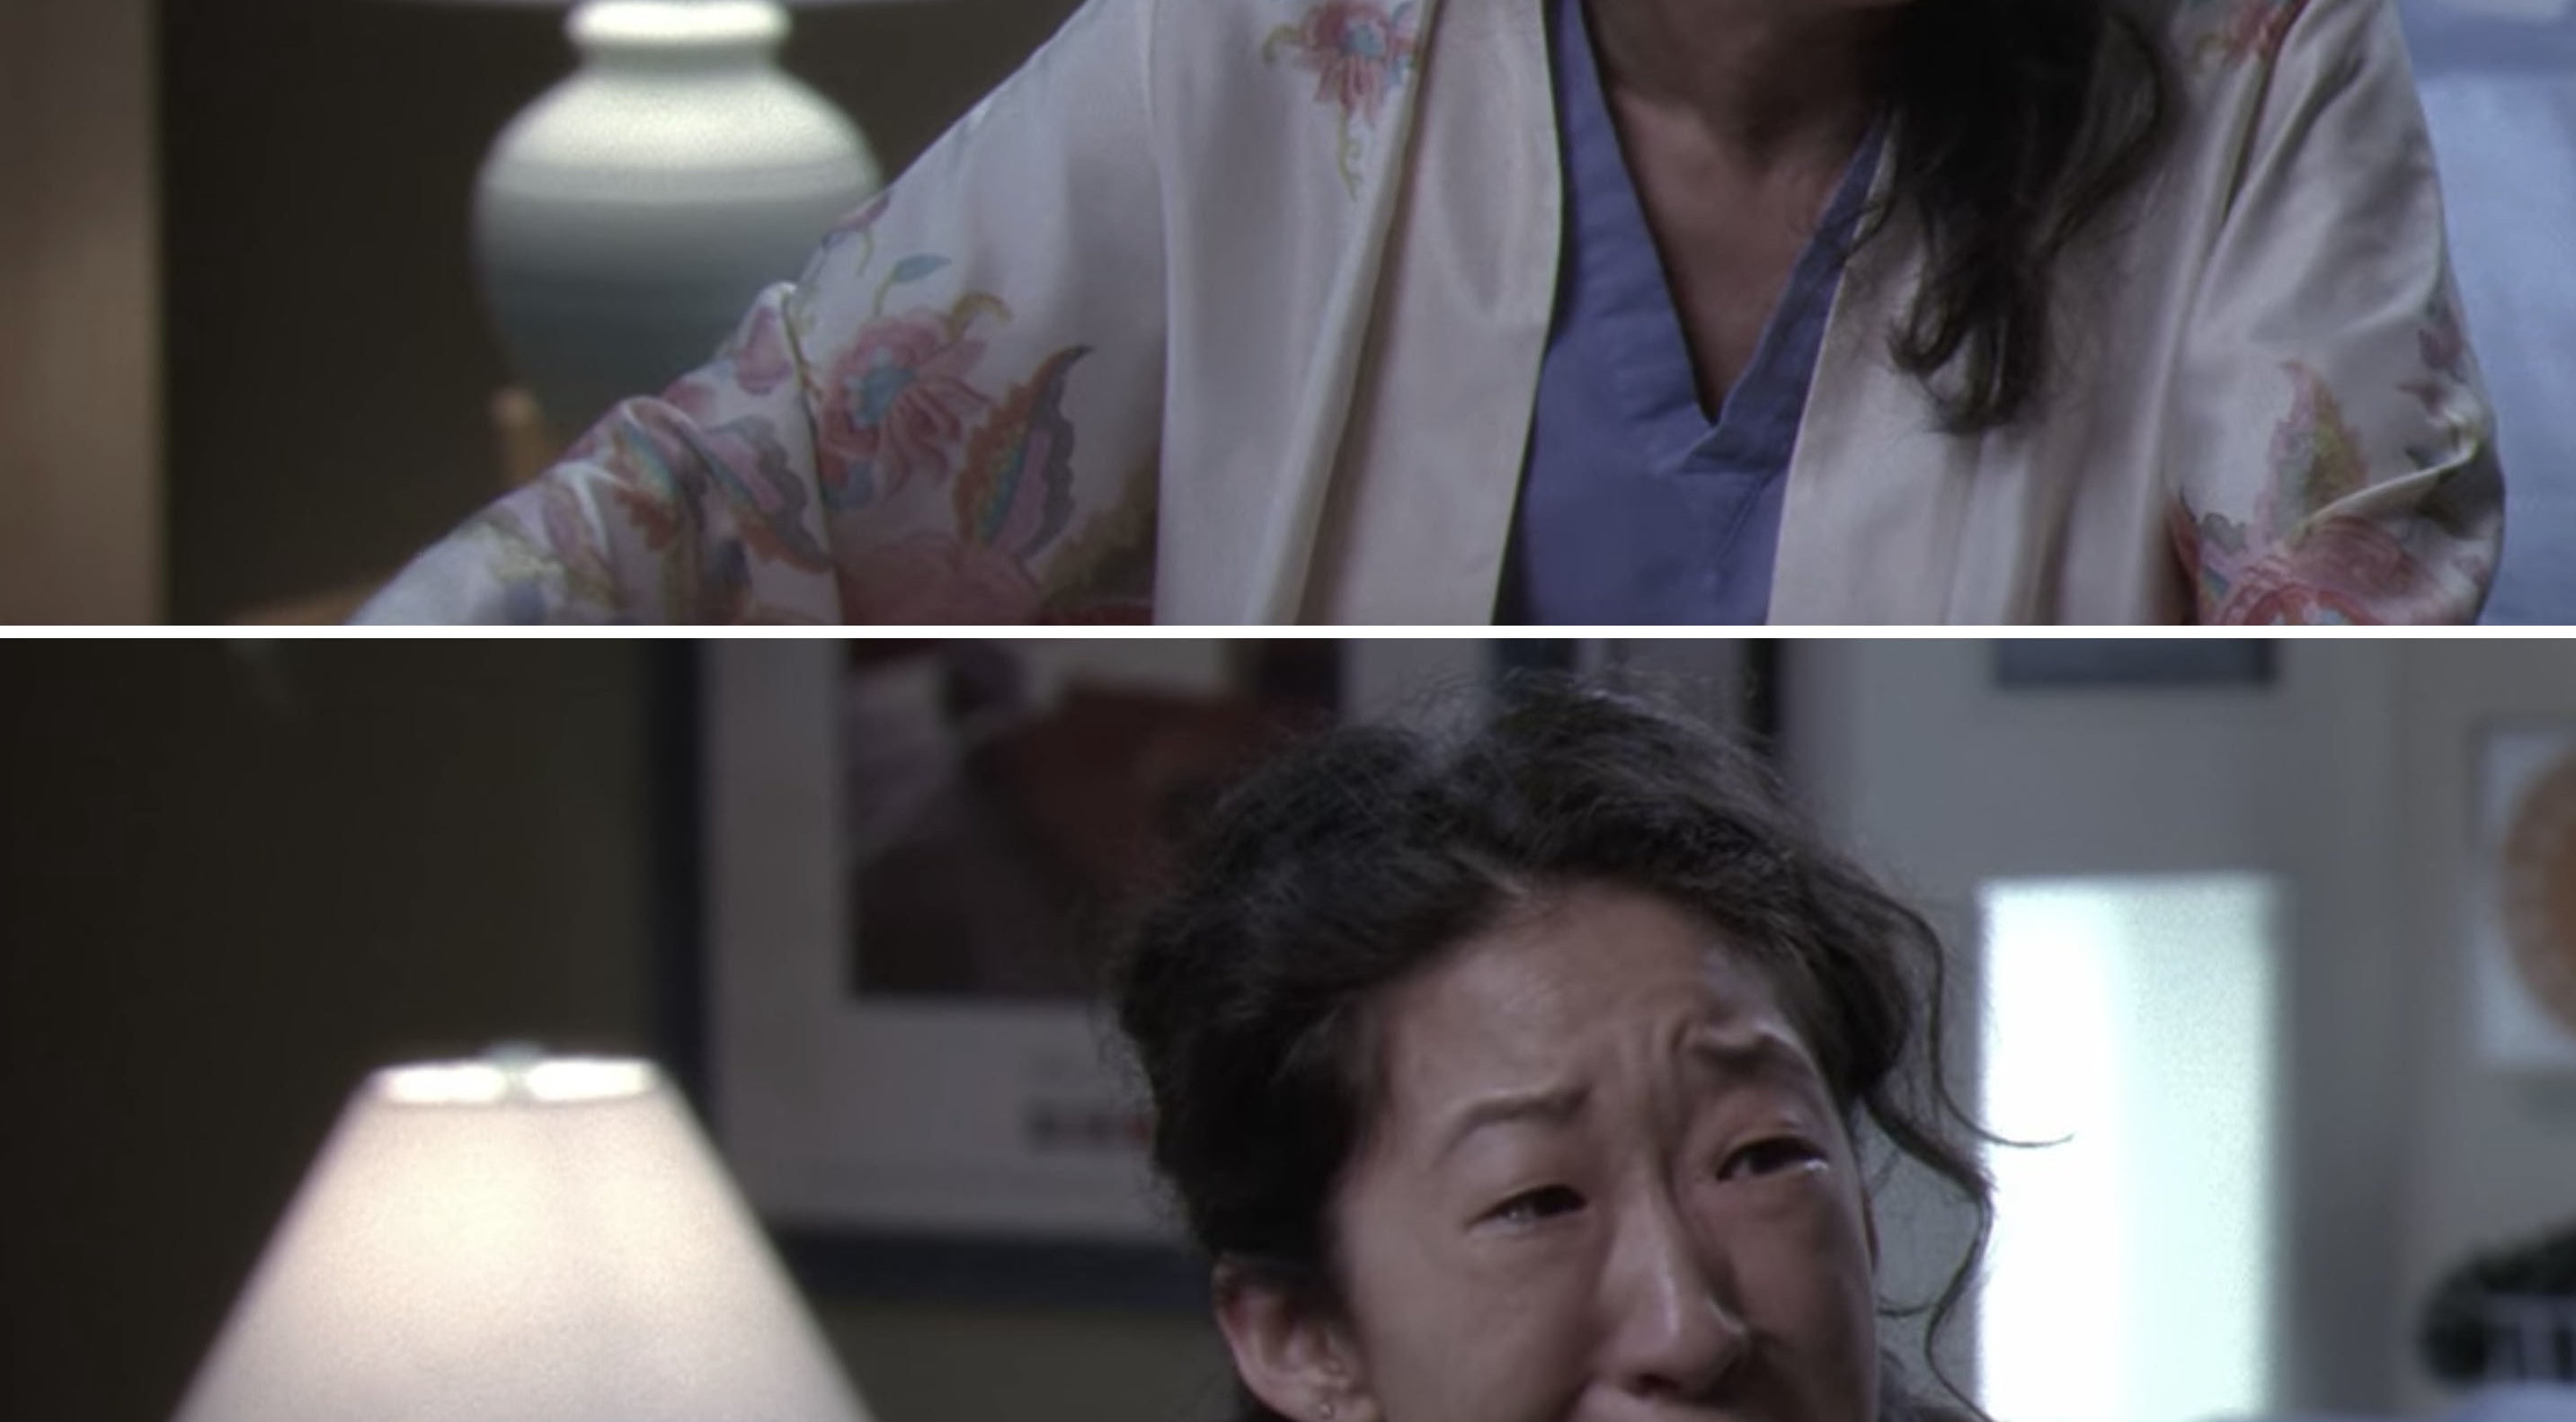 Cristina Yang sobbing